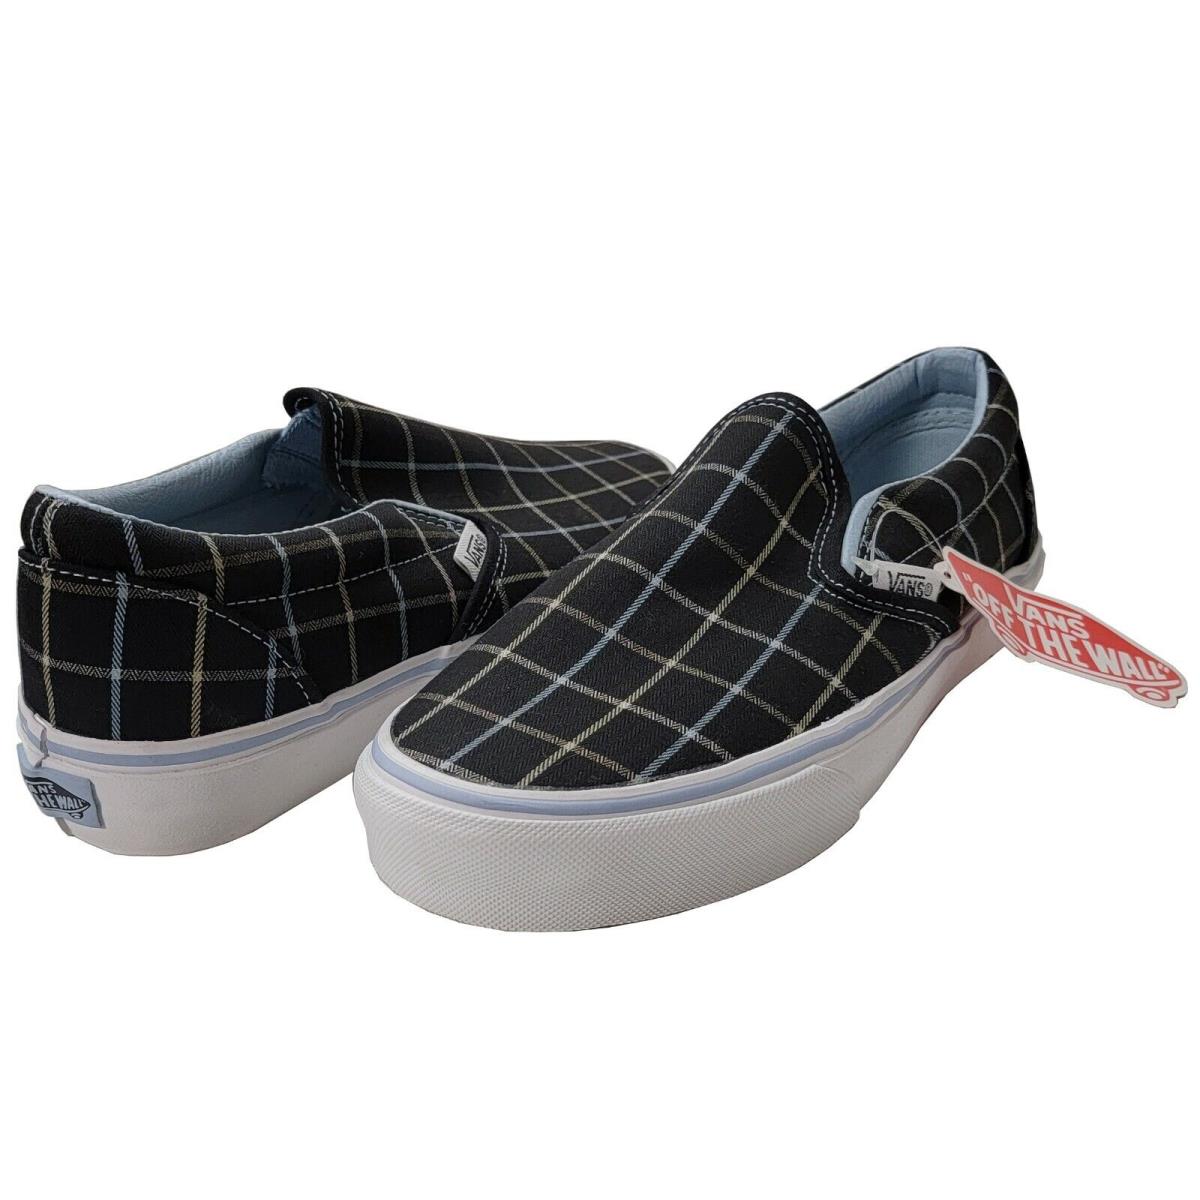 Vans Adult Unisex Classic Slip-on Skate Shoes Plaid 42 Cashmere Blue 5859299